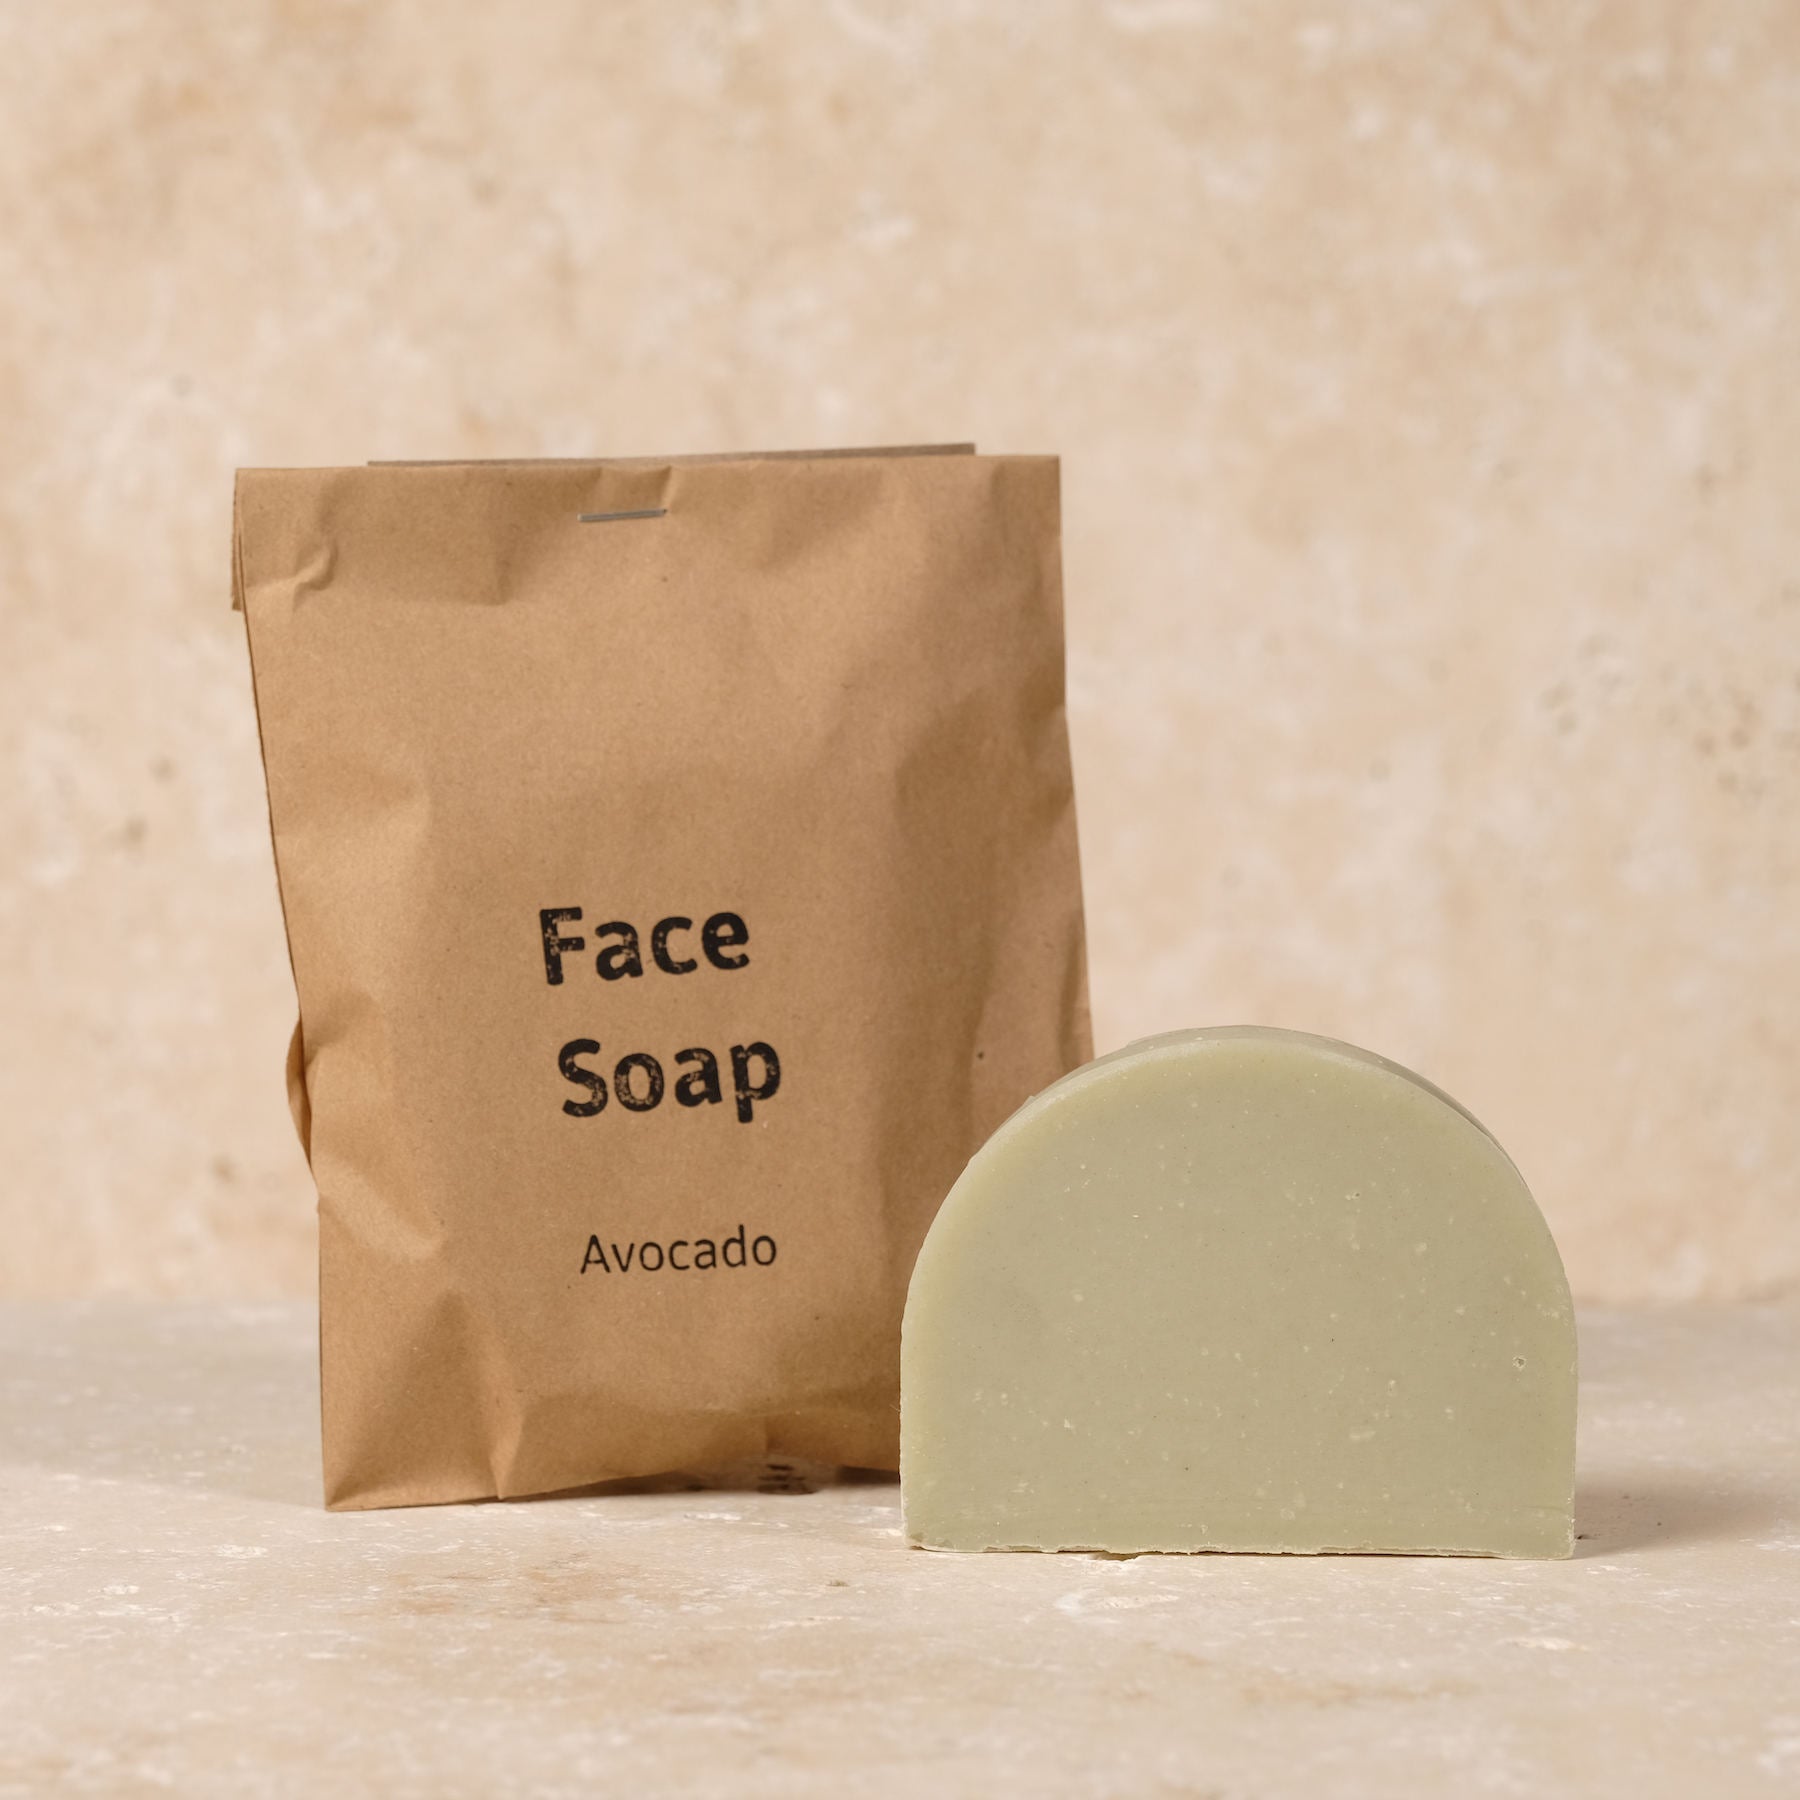 Gesichtsseife - Face Soap - Avocado aus besten Inhaltsstoffen mit Meersalz. Jetzt im Schweizer Yoga Shop kaufen.